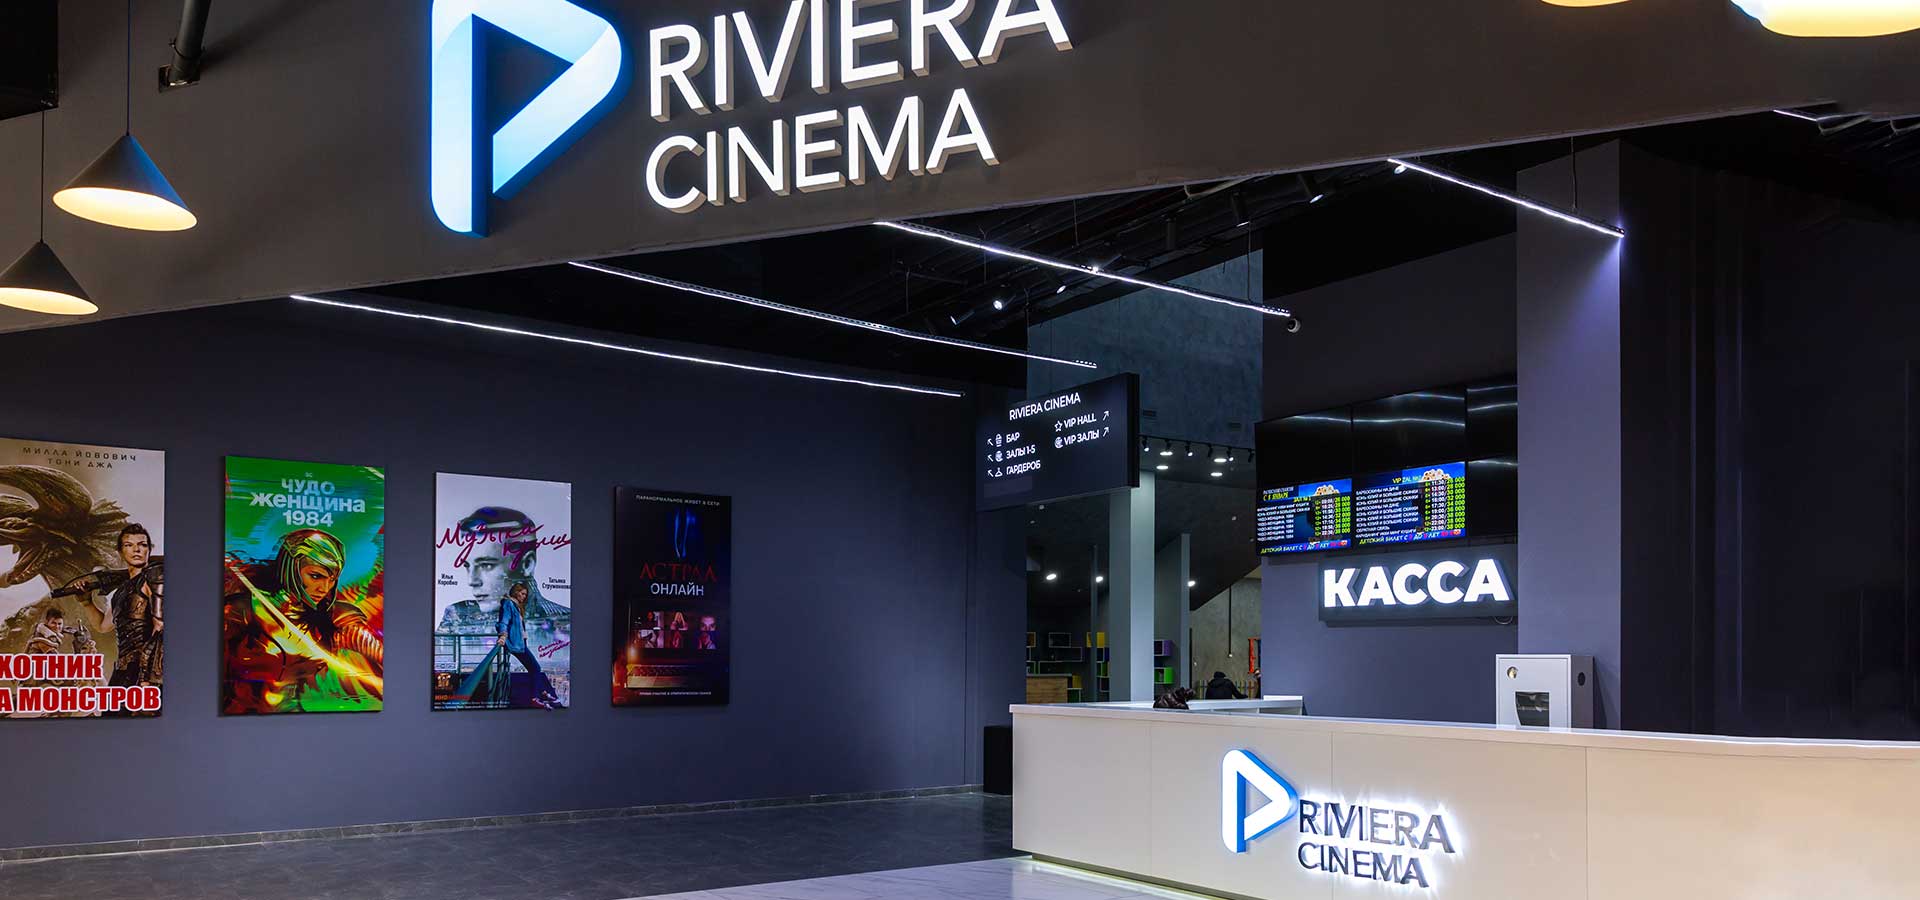 Кинотеатр «Riviera Cinema, Vip-зал» в Ташкенте - расписание фильмов, афиша кино, адрес, телефоны и другие контакты